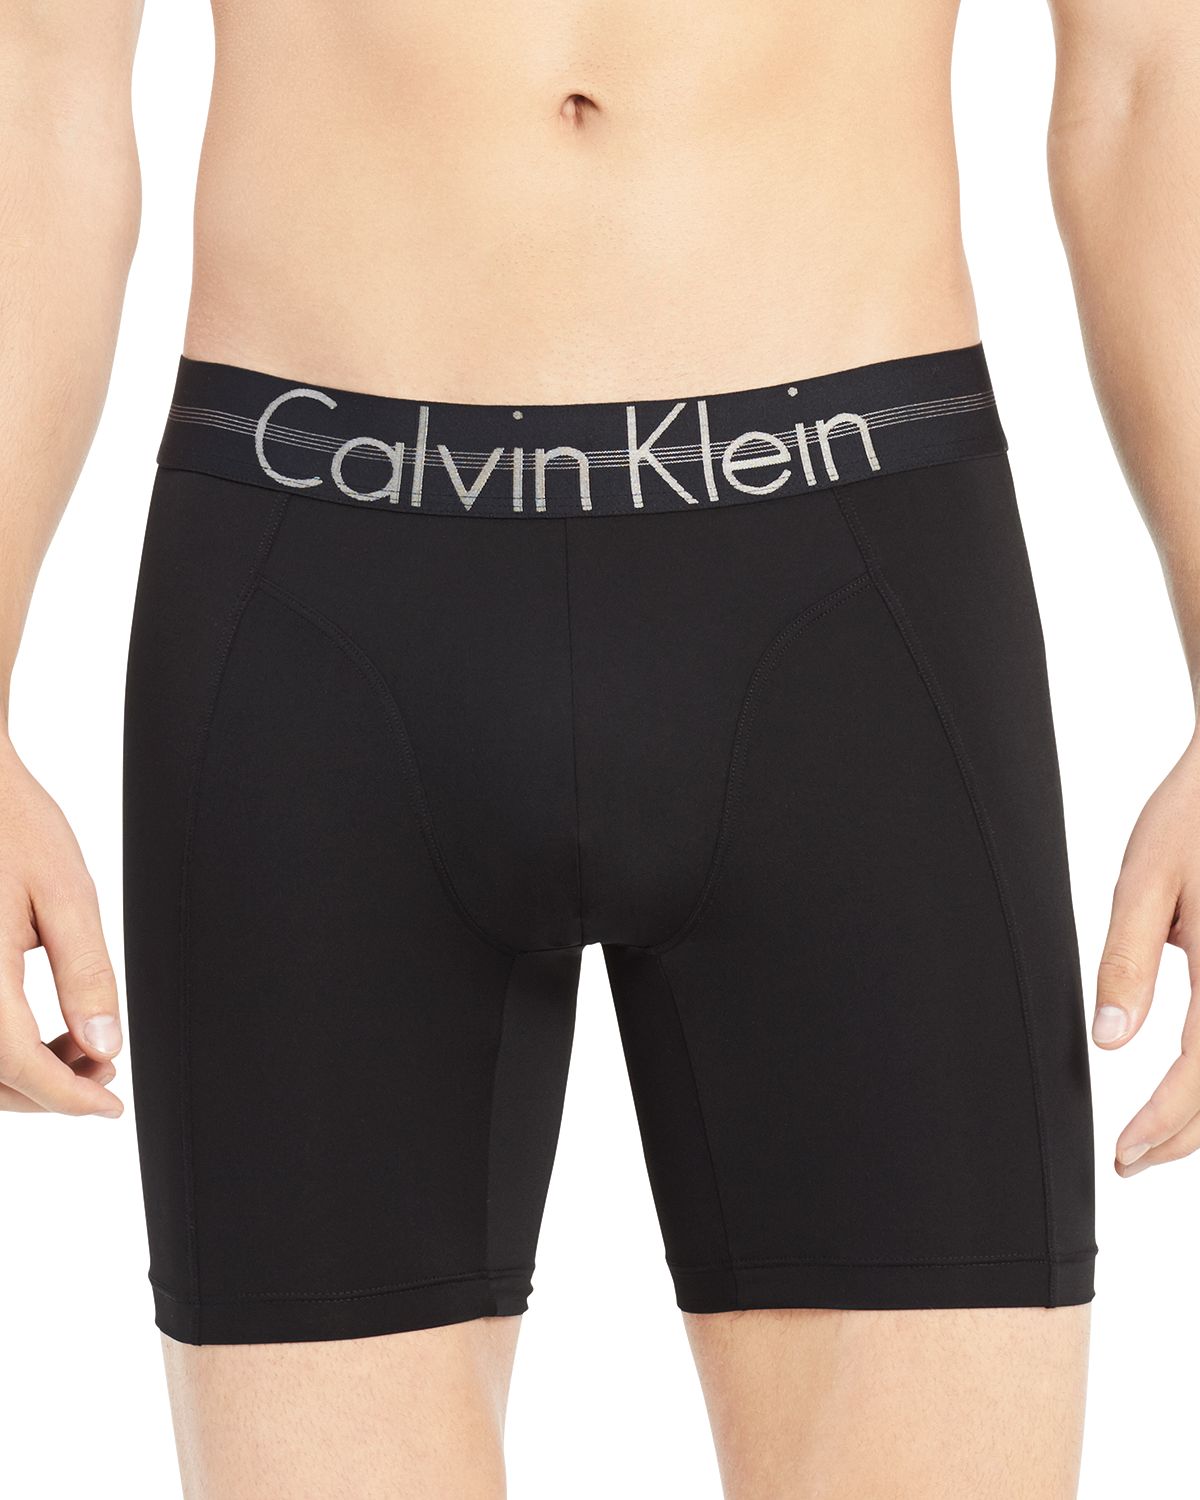 Calvin Klein Logo Boxer Briefs Black